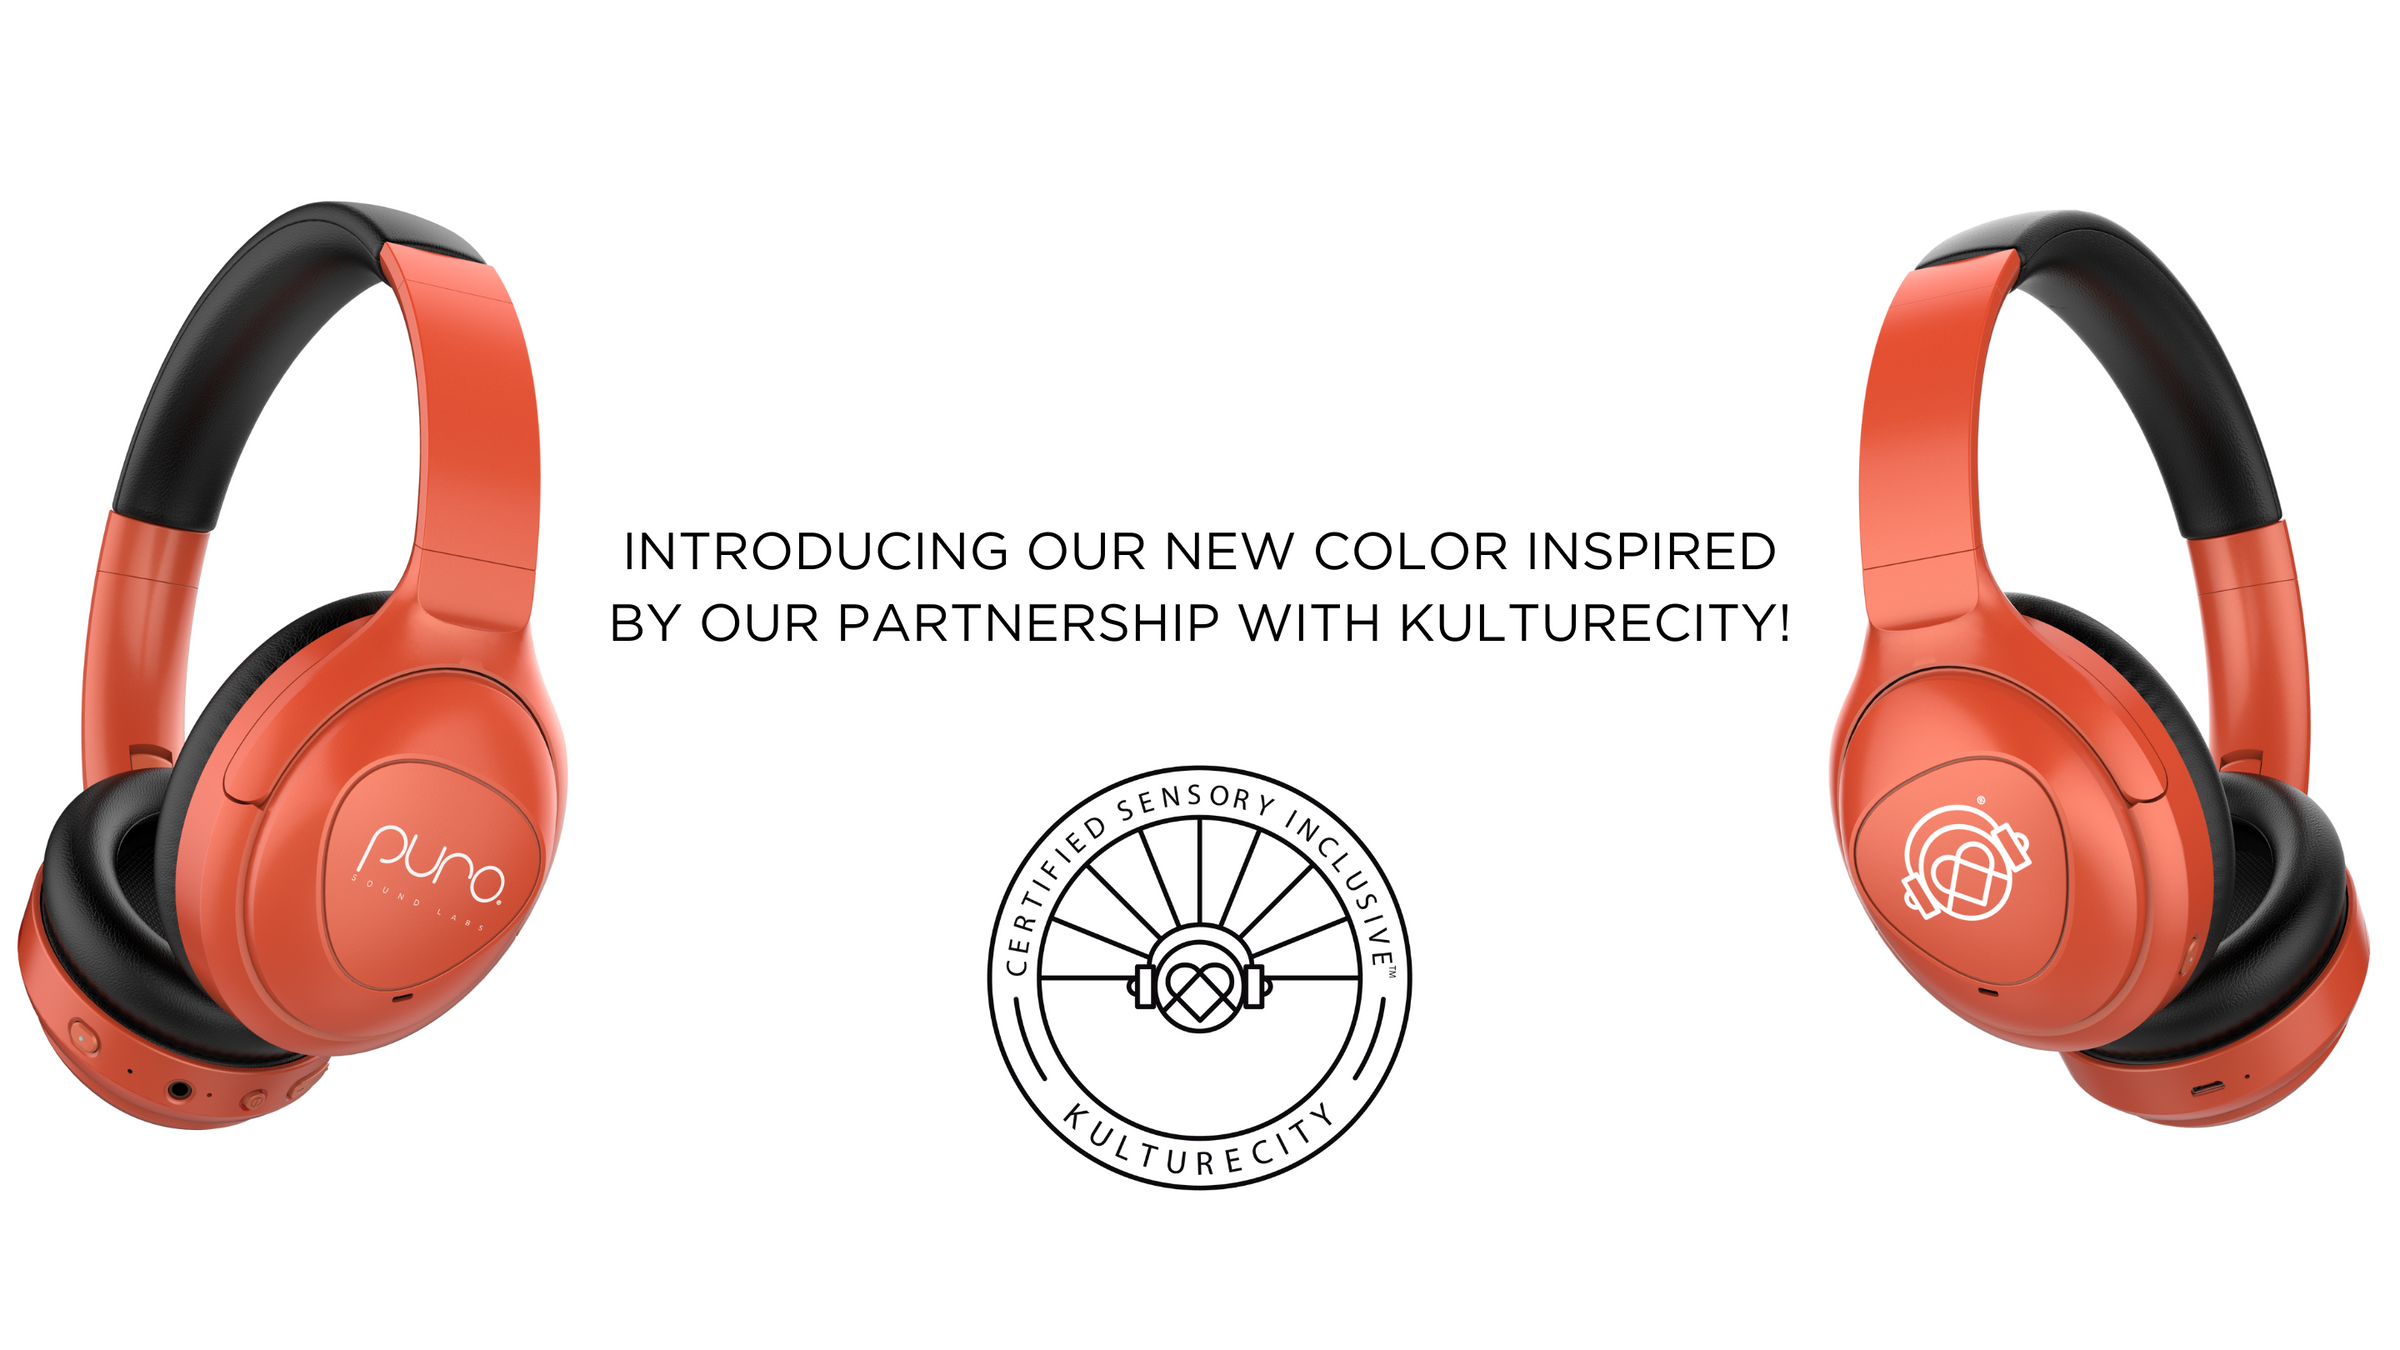 PuroPro partnership with KultureCity Headphones